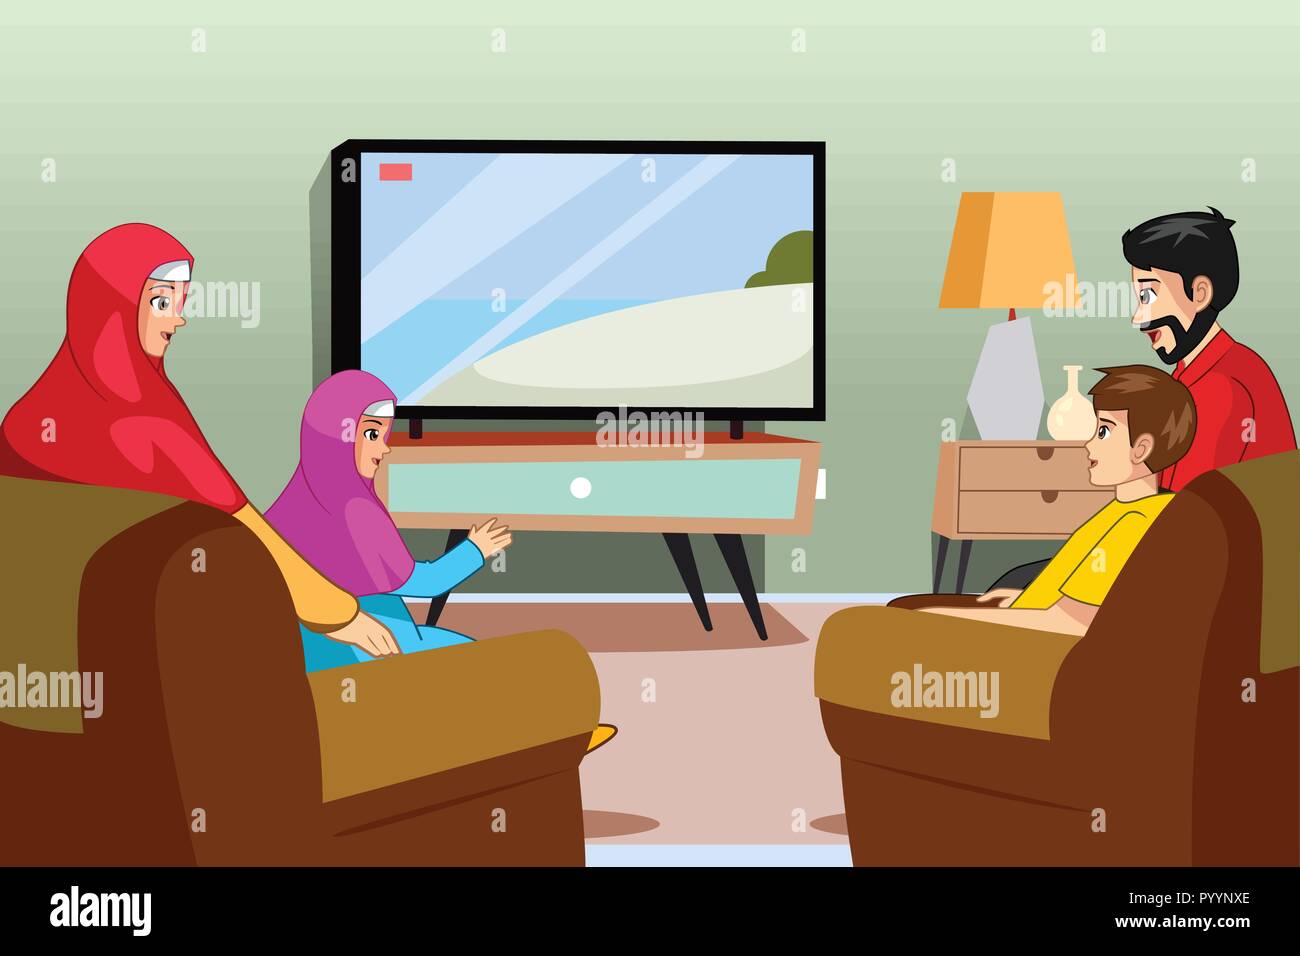 Un vecteur illustration de famille musulmane de regarder la télévision à la maison Illustration de Vecteur